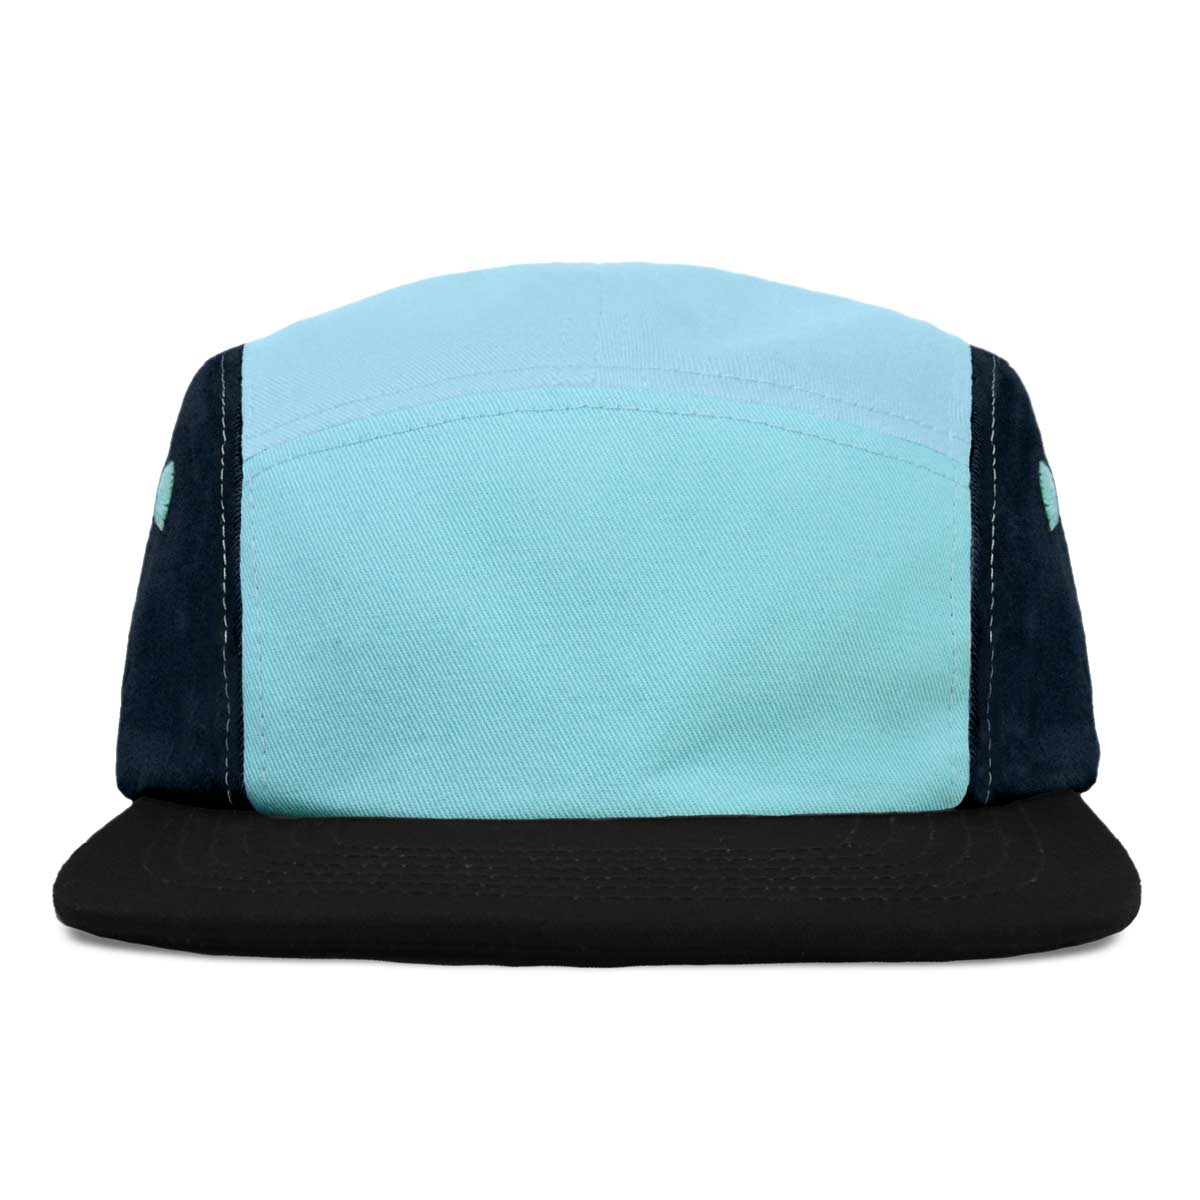 Dalix Camper Hat